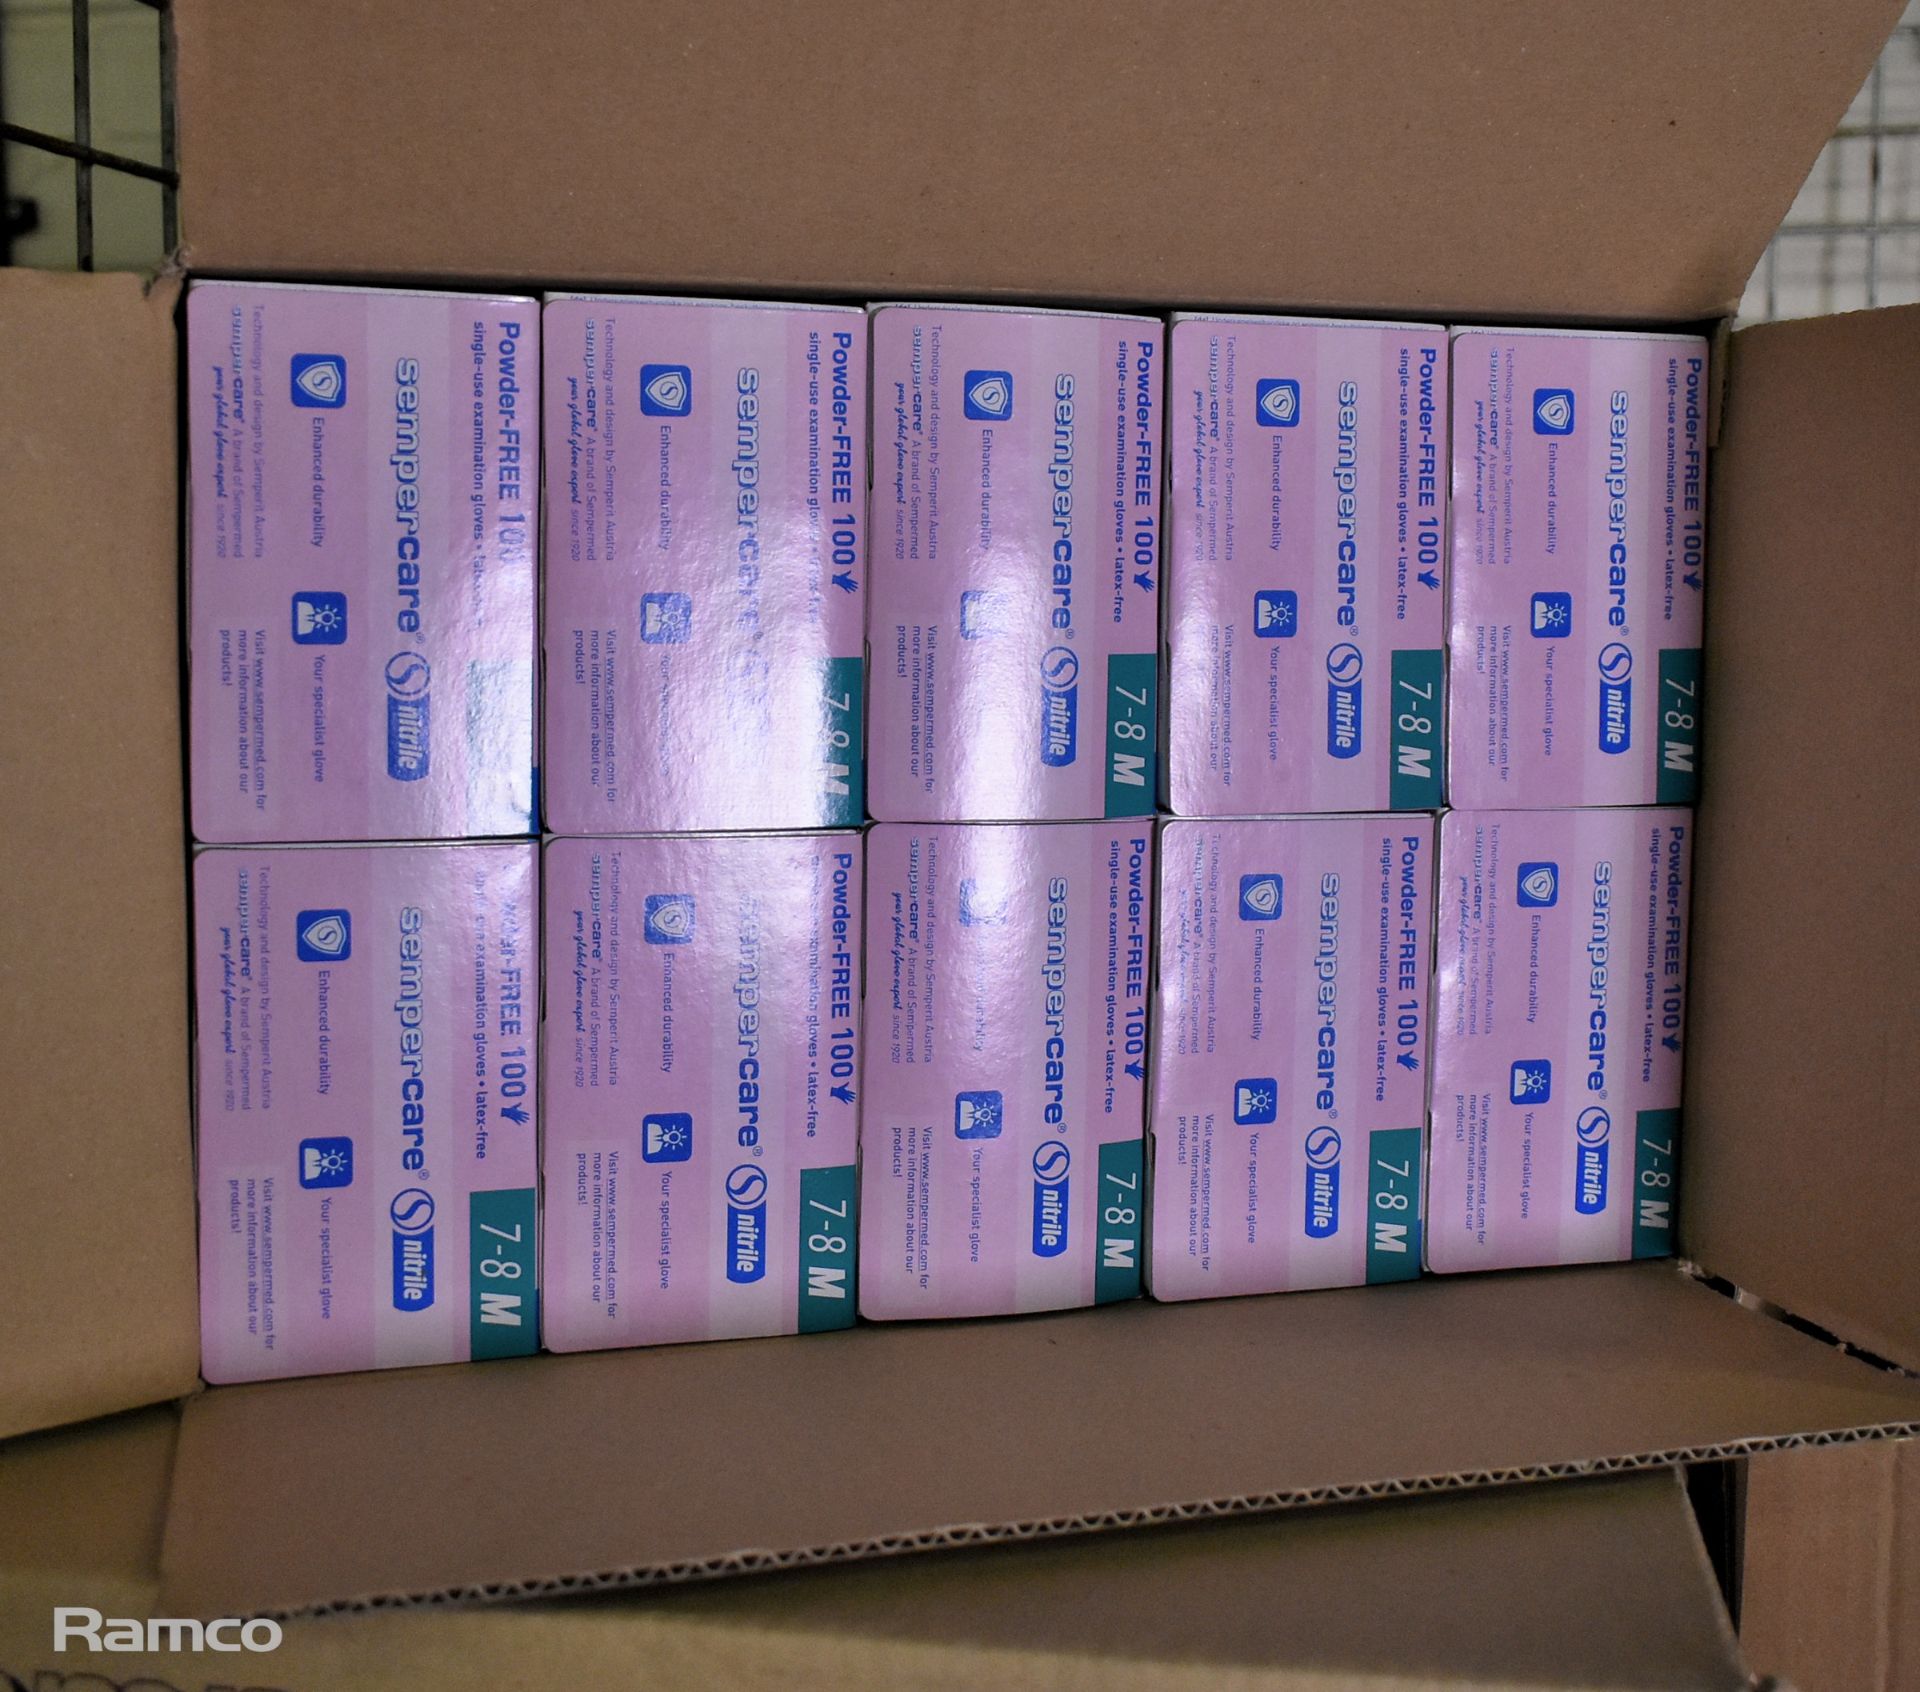 Nitrile powder-free single examination gloves - 12 boxes, small x1, large x4, medium x7 - Image 2 of 9